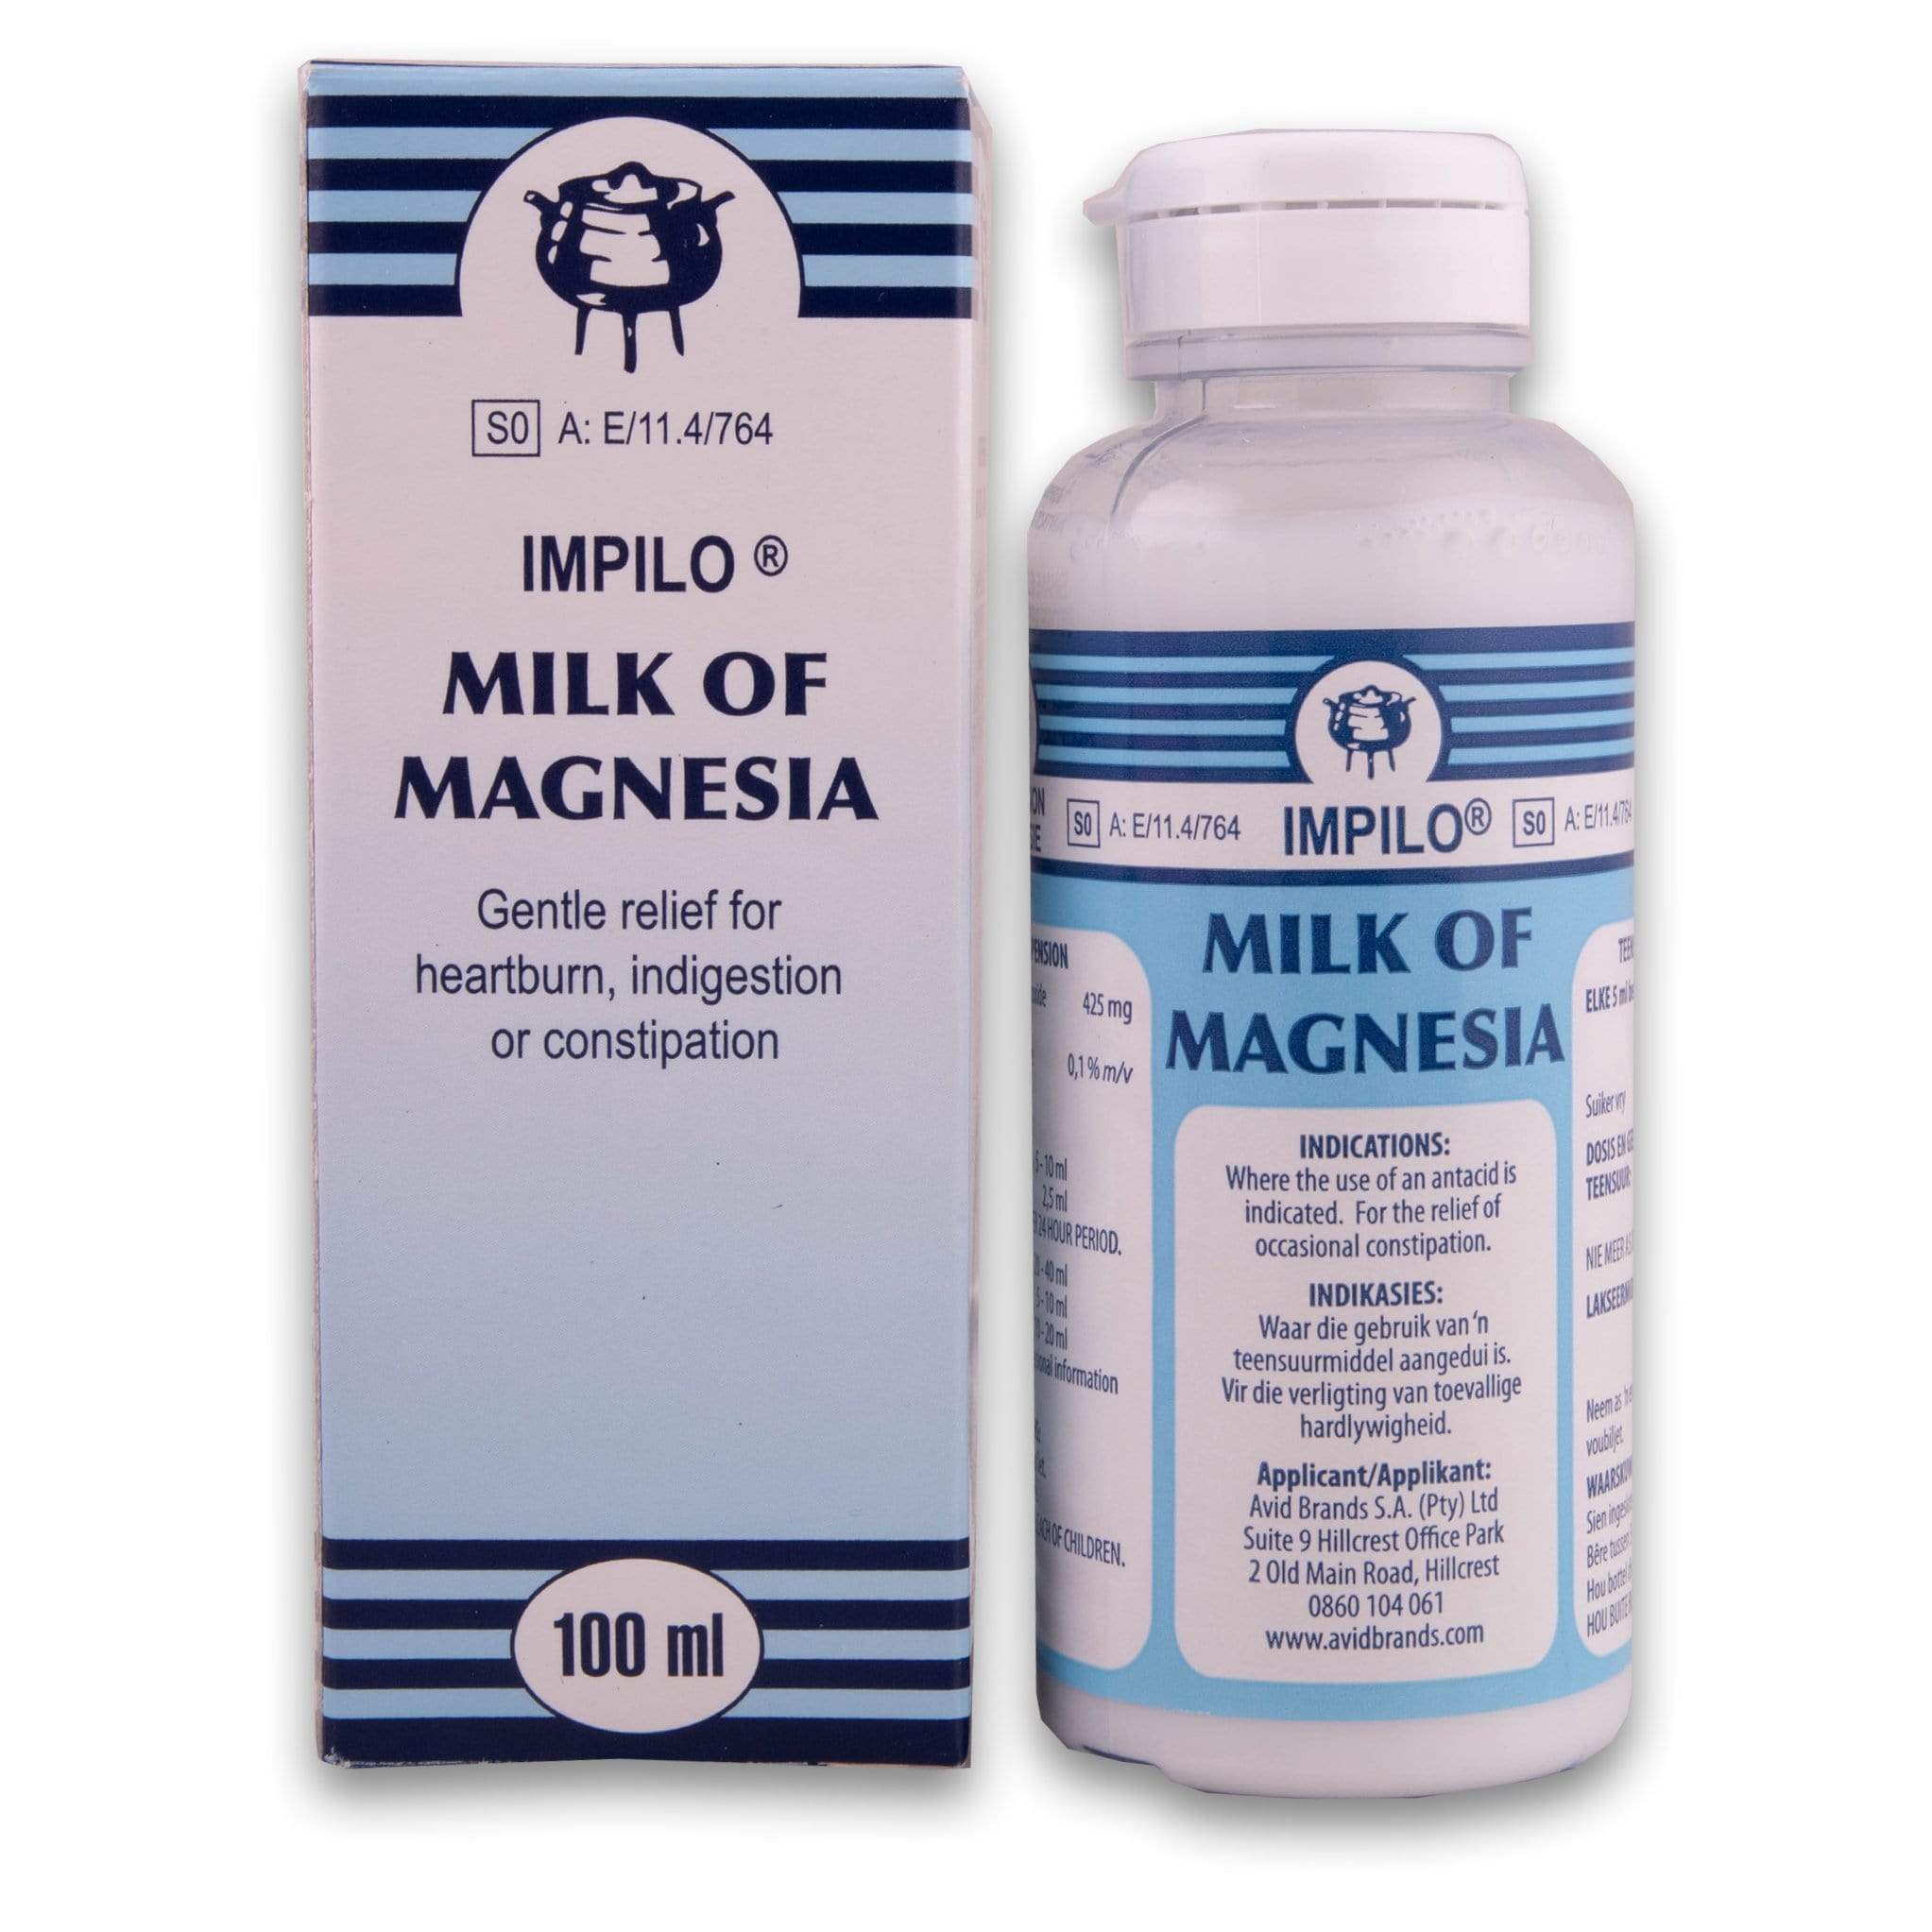 Phipp's Milk Of Magnesia 100ml